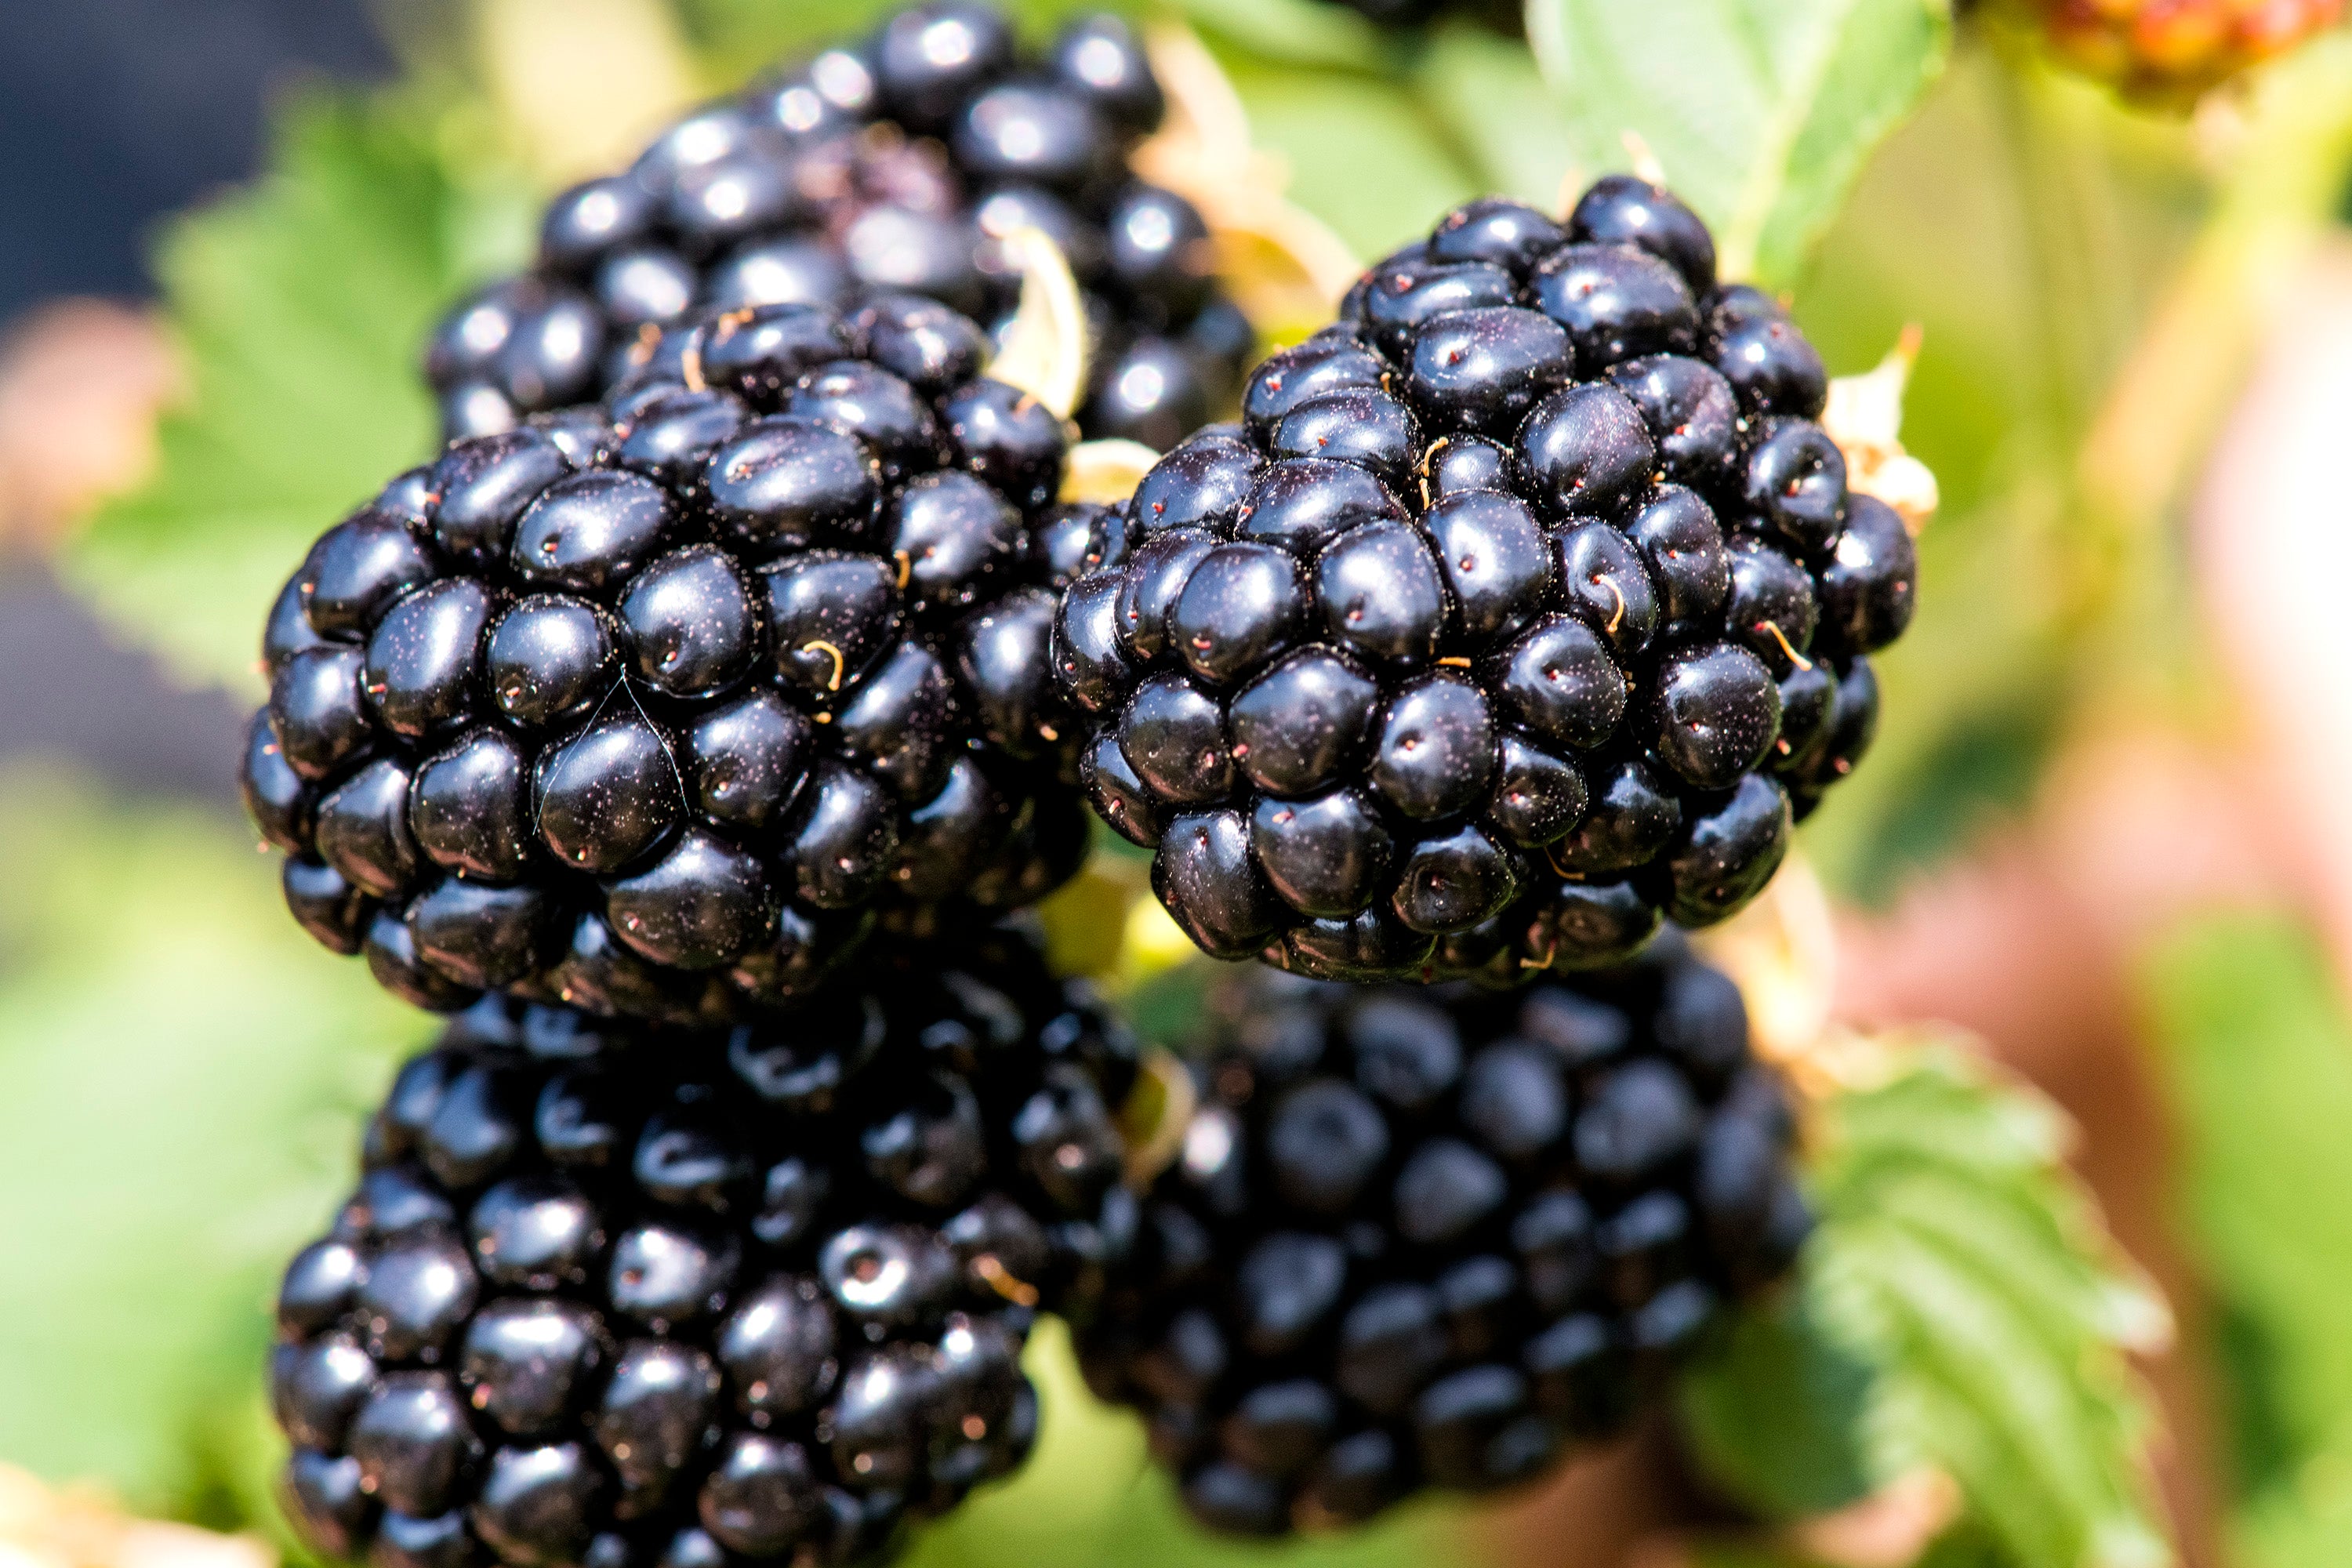 Taste of Heaven - Thornless BlackBerry